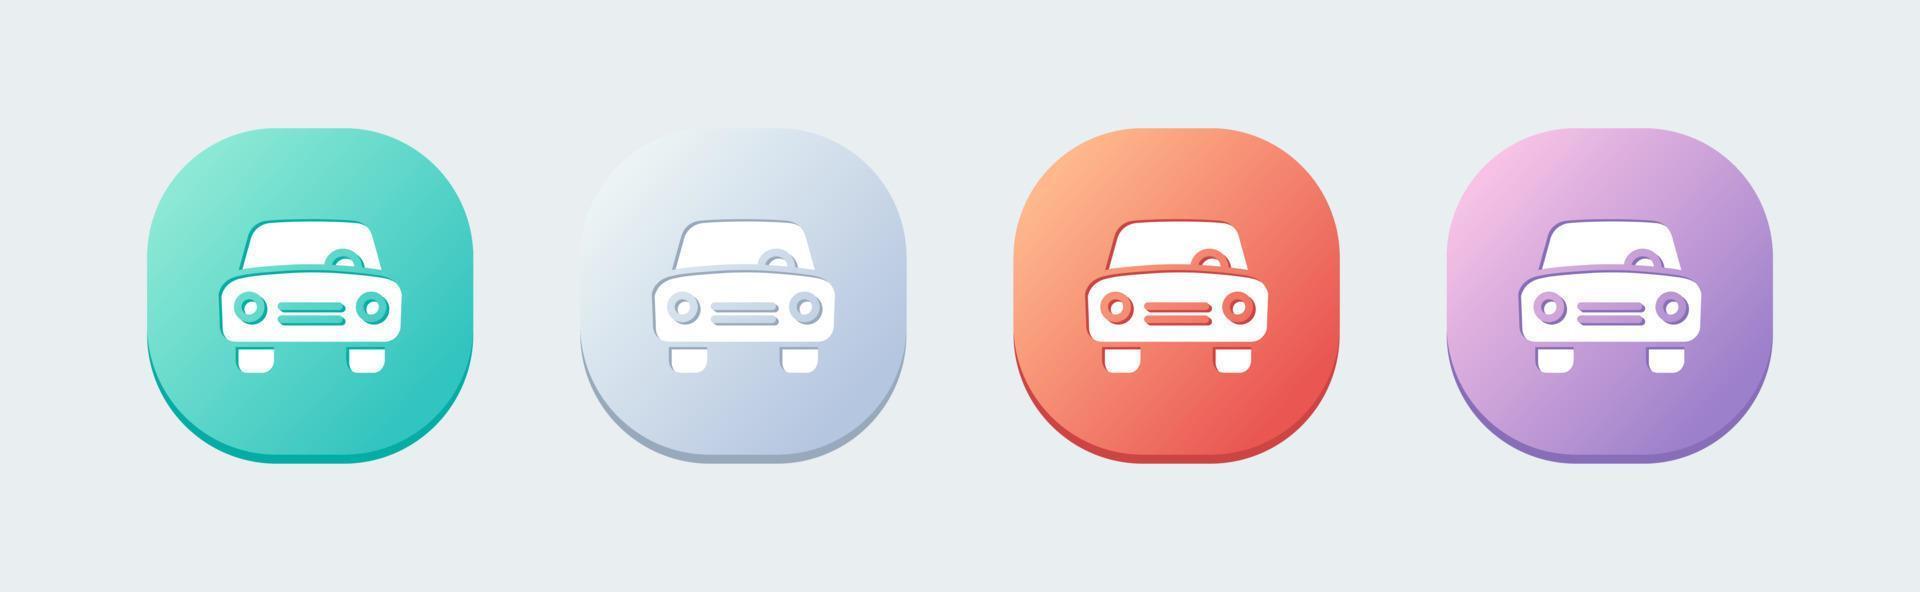 icône solide de voiture dans un style design plat. signes de transport illustration vectorielle. vecteur